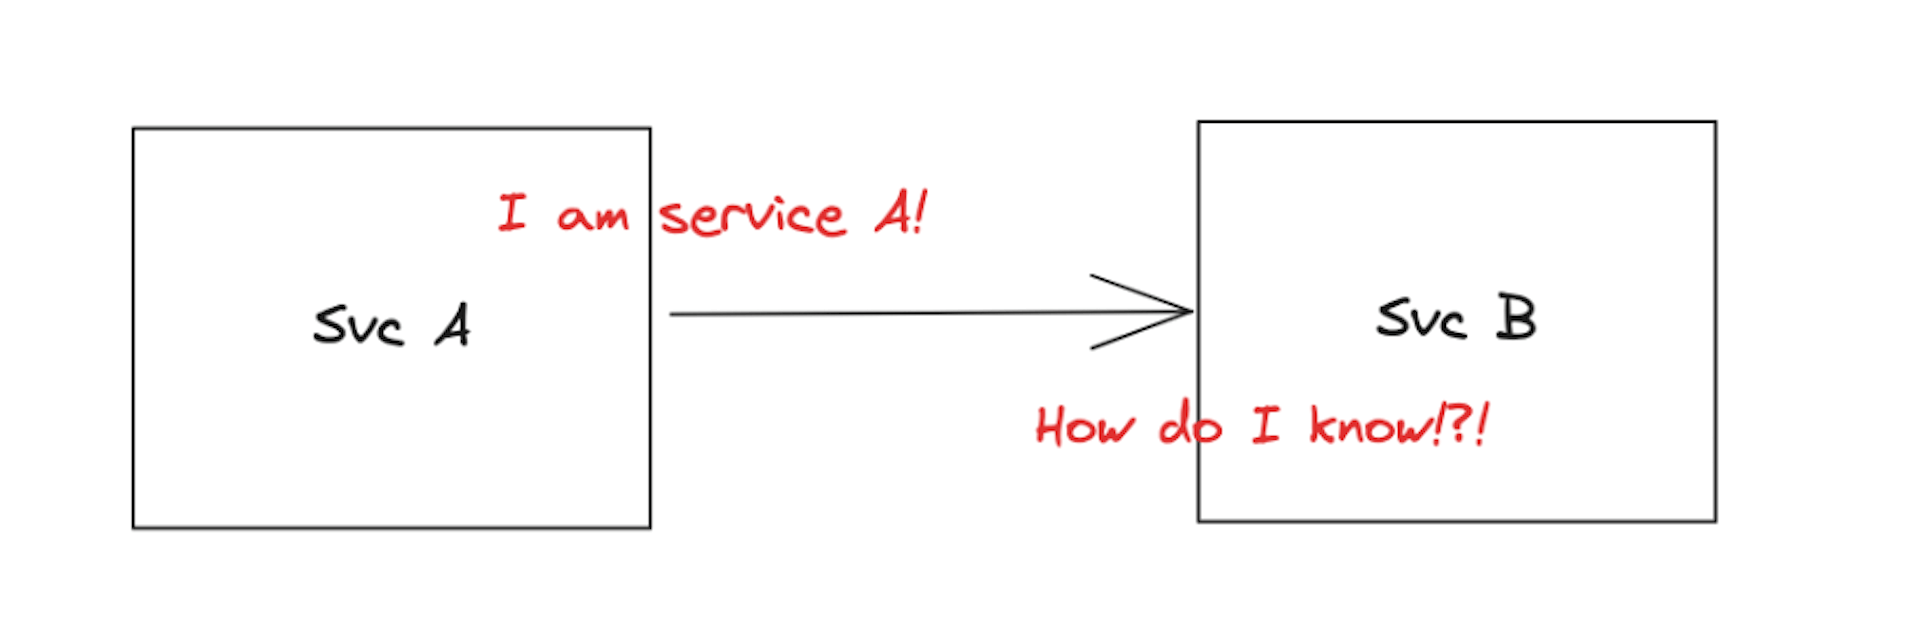 Diagrama mostrando que o Serviço B precisa autenticar o Serviço A